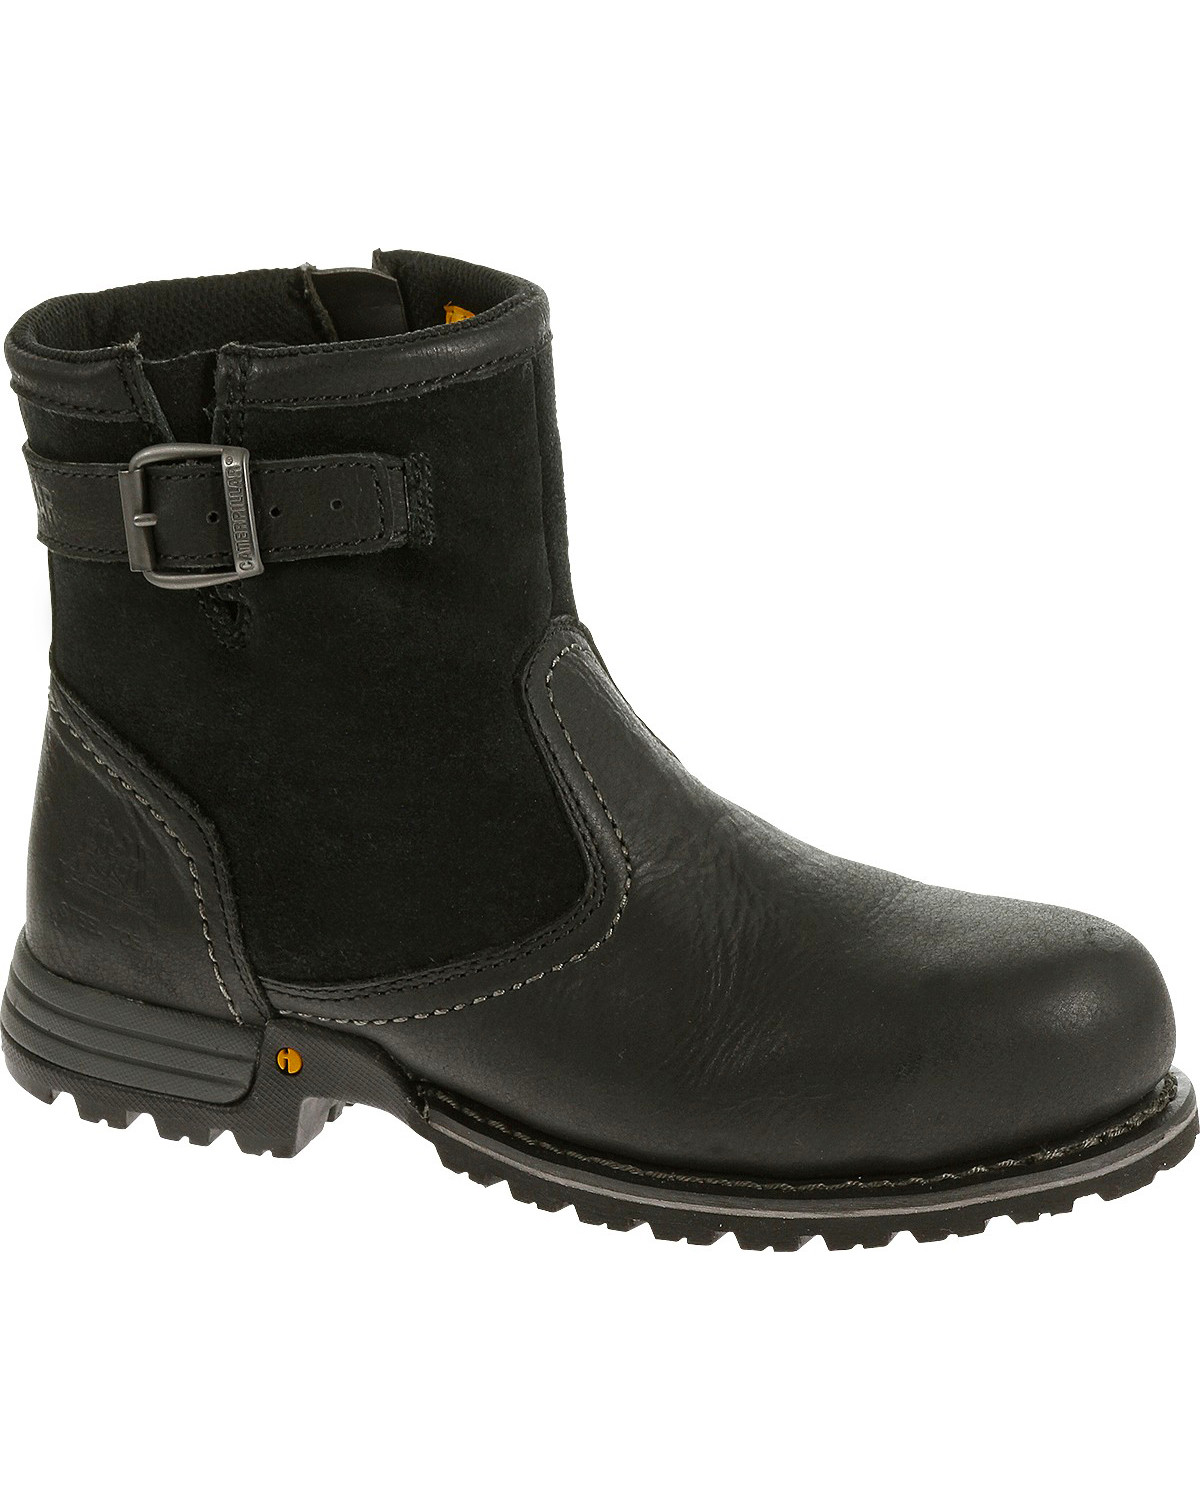 women's black steel toe boots